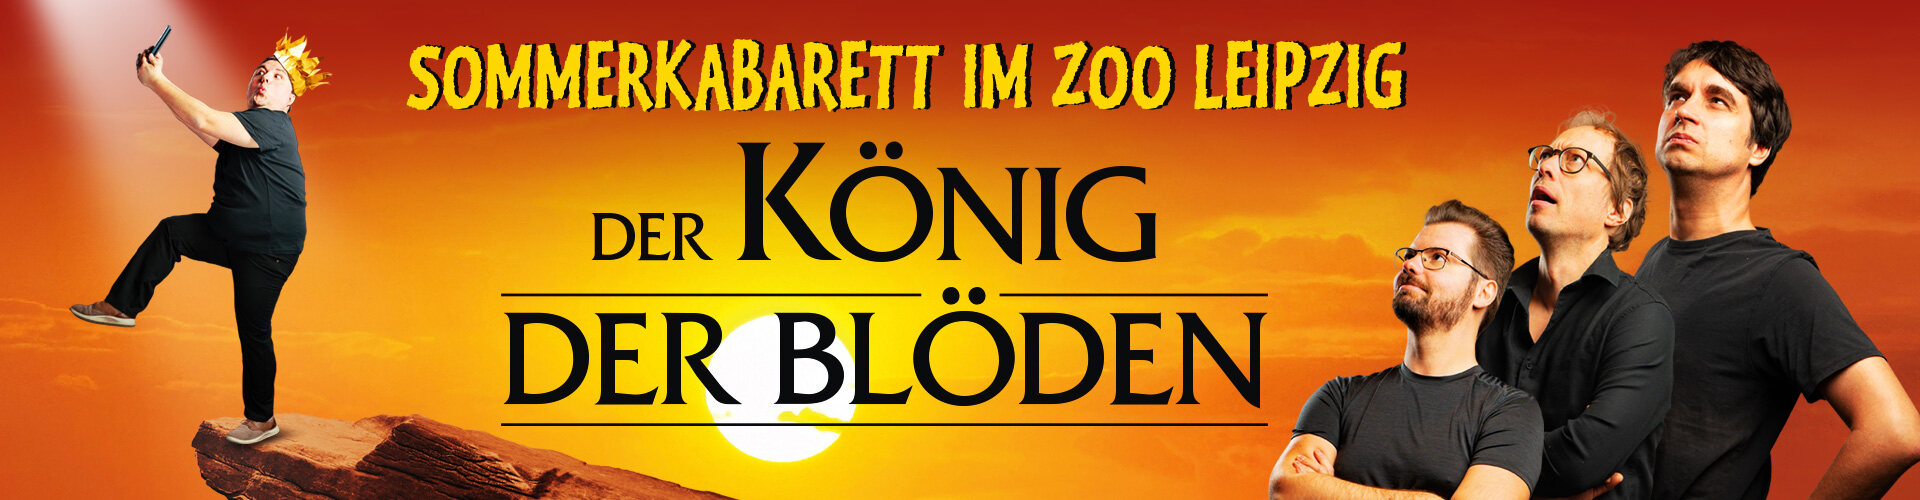 Der König der Blöden - Sommerkabarett im Zoo Leipzig